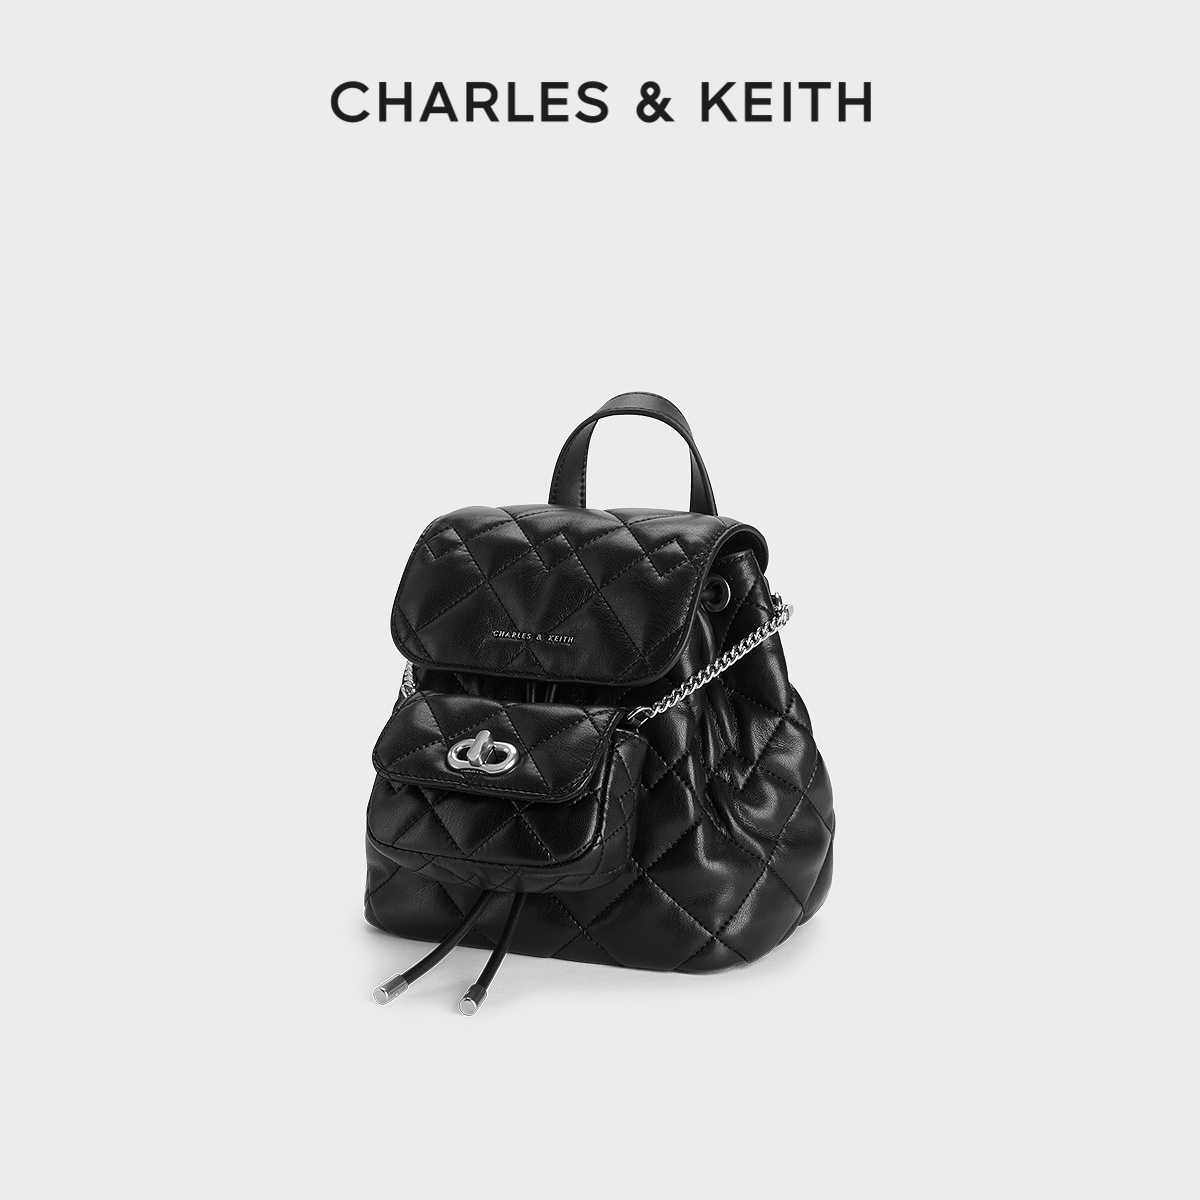 CHARLES & KEITH CHARLES&KEITH24CK2-60151400菱格大容量双肩包 569元